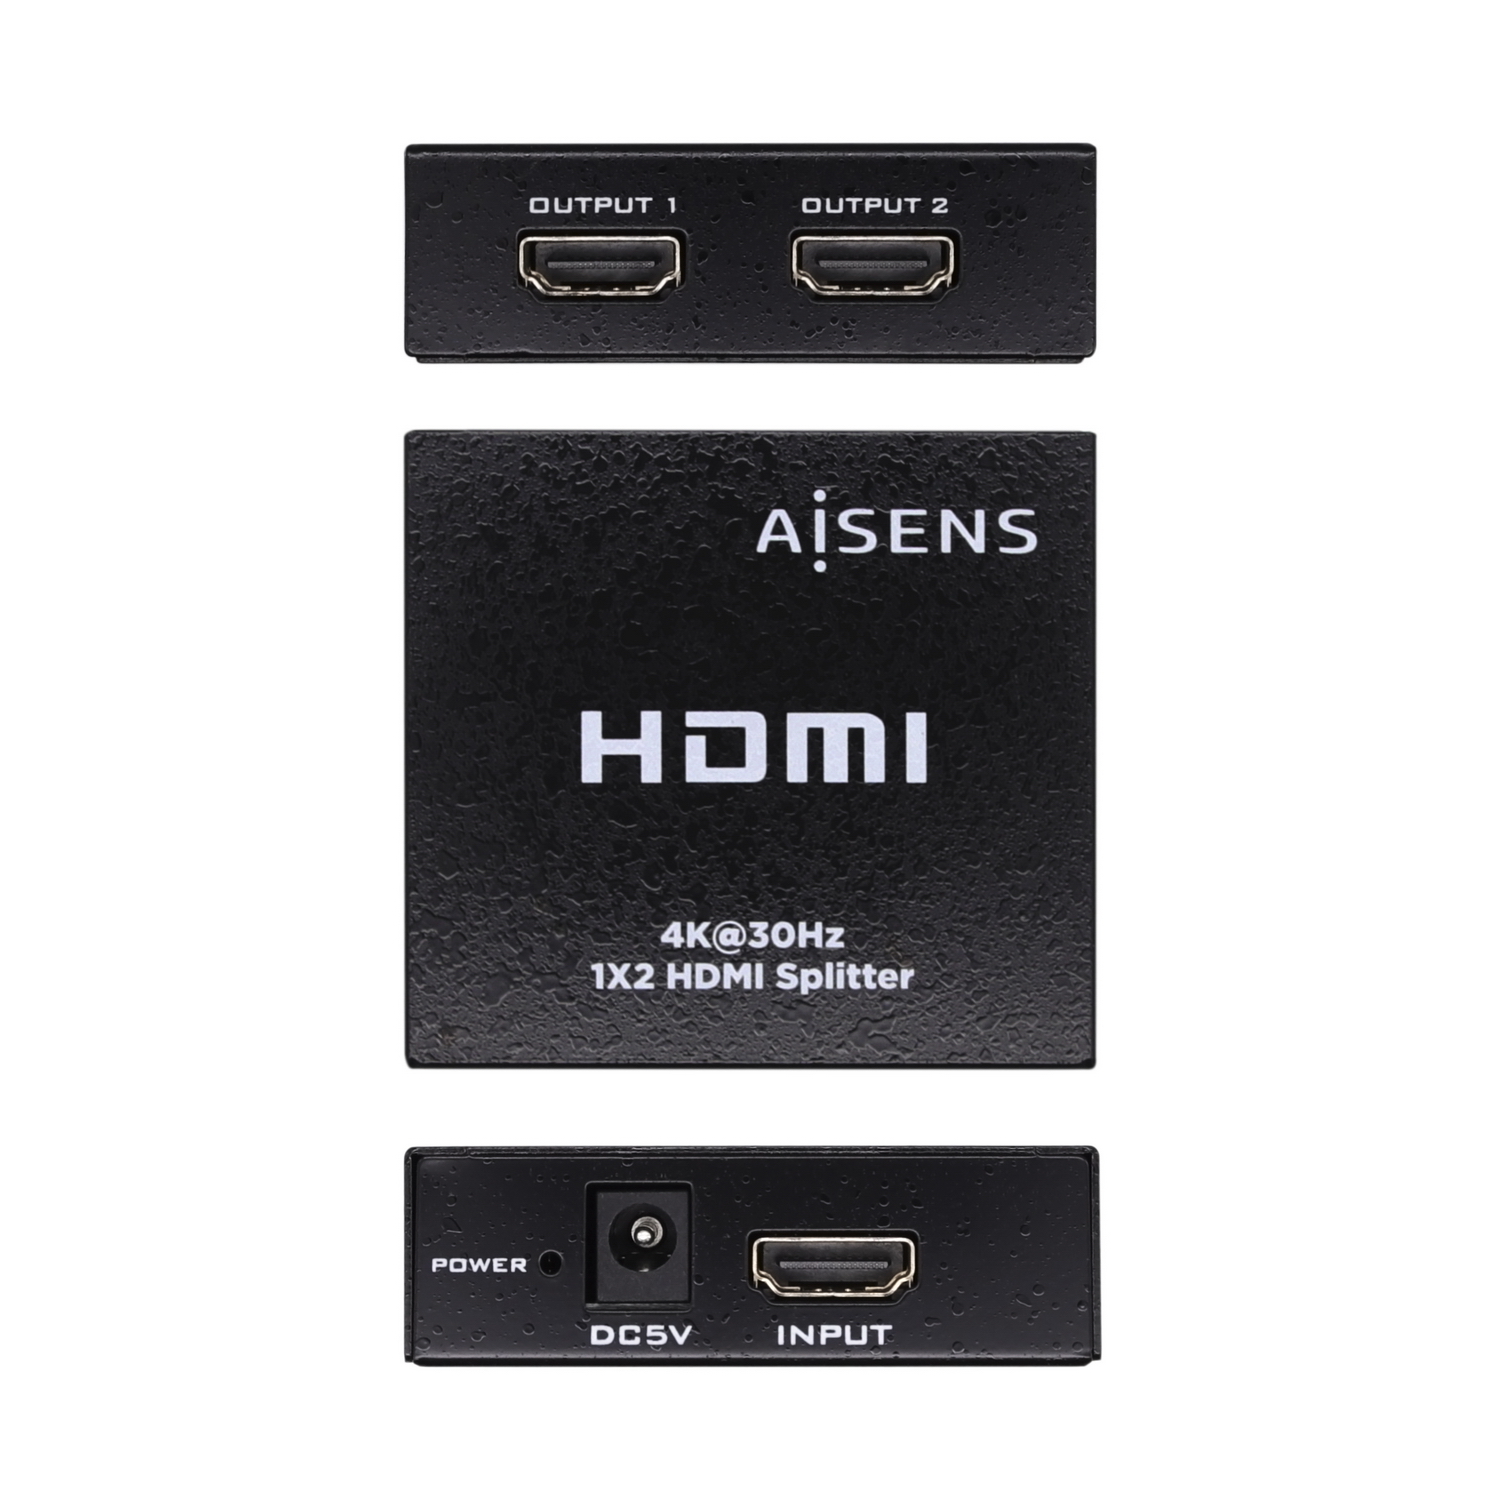 Duplicateur HDMI Aisens 4K @ 30HZ 1x2 avec alimentation - Couleur noire